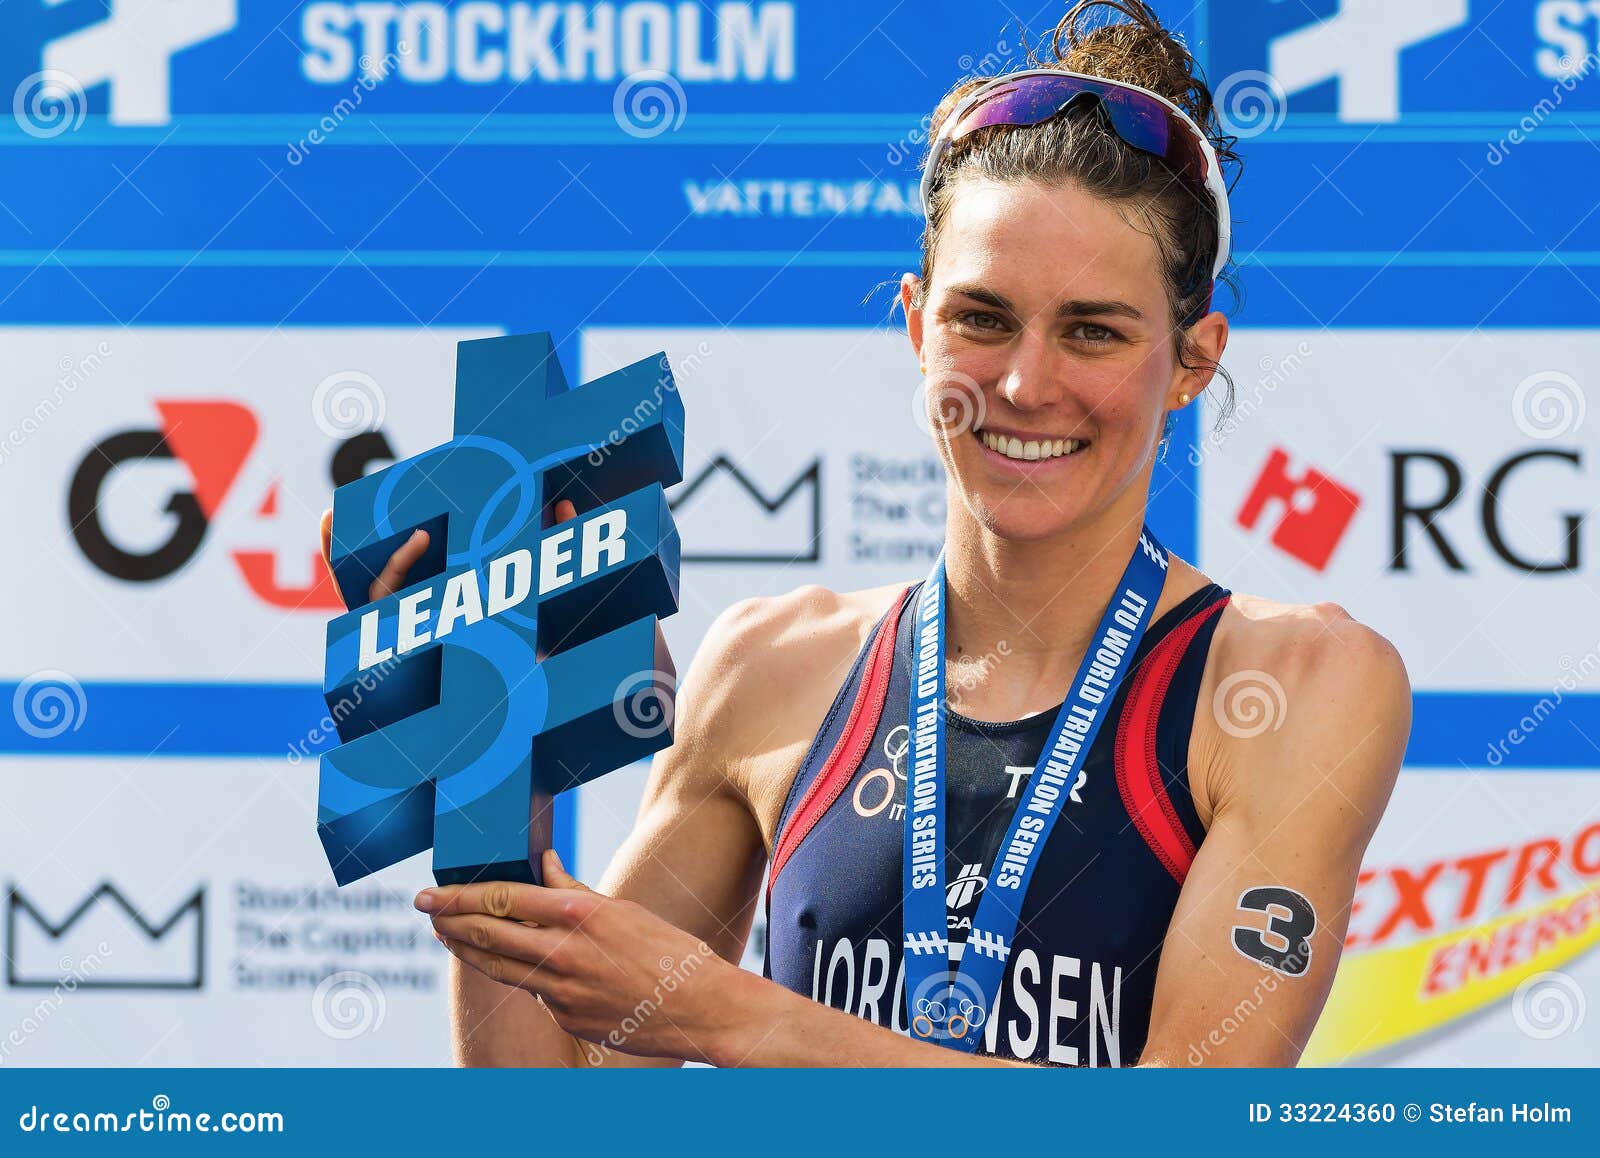 stockholm aug overall leader gwen jorgensen wo womens itu world triathlon series event sweden 33224360